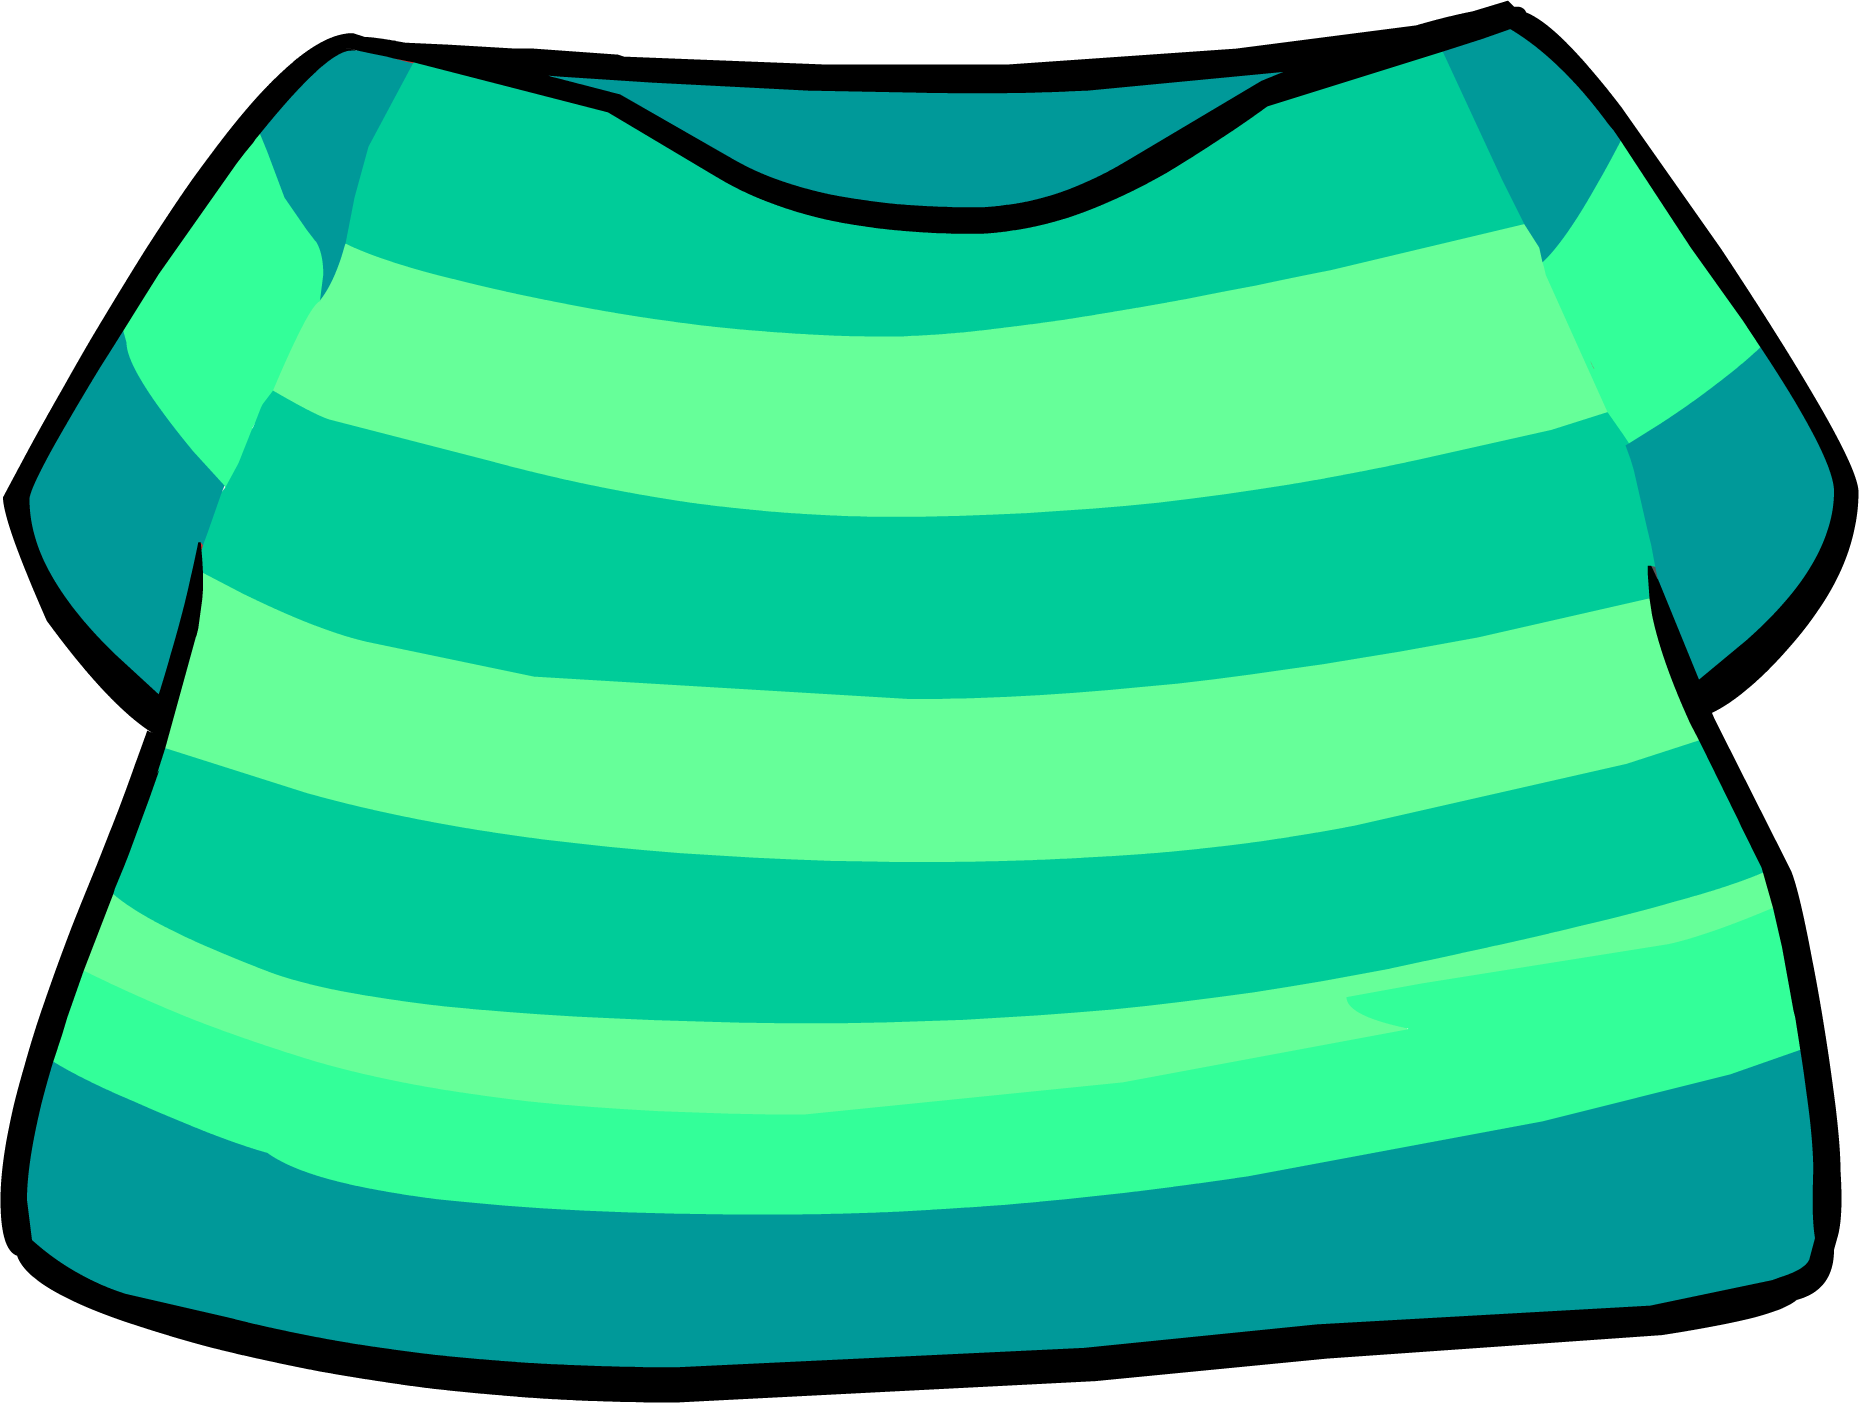 Image aqua clothing icon. Shirt clipart striped shirt